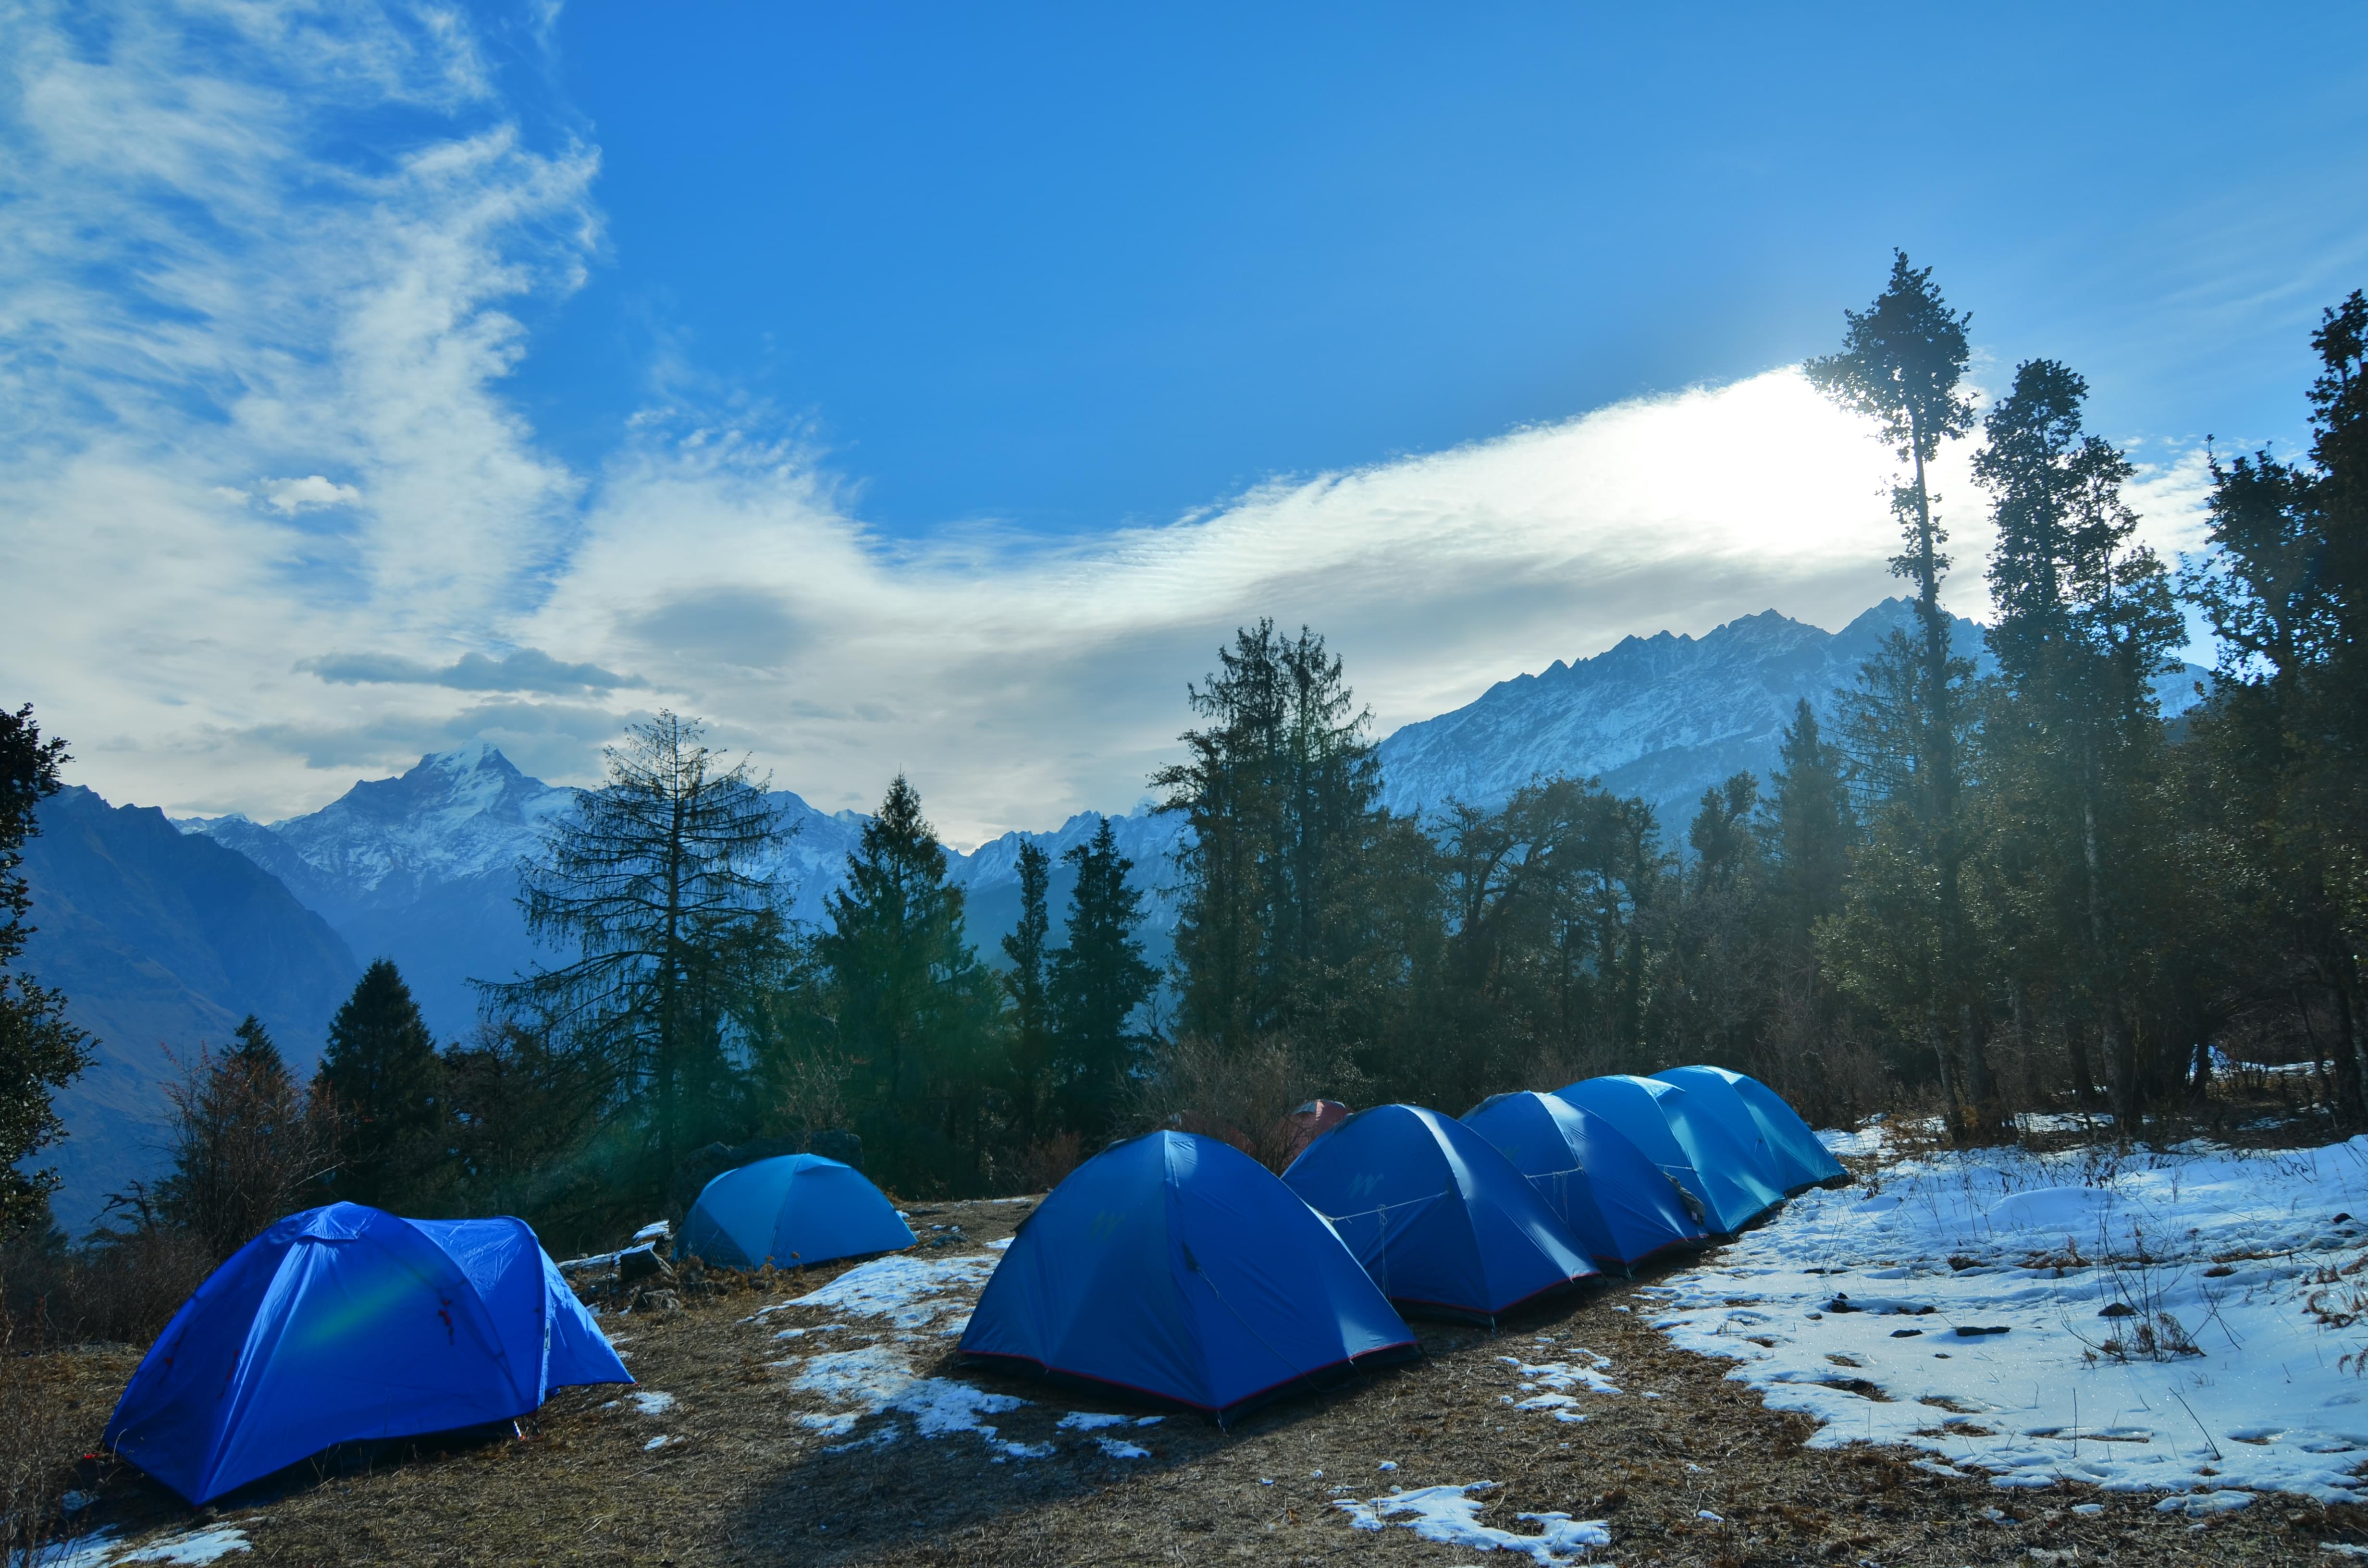 Camping at ali bedni bugyal